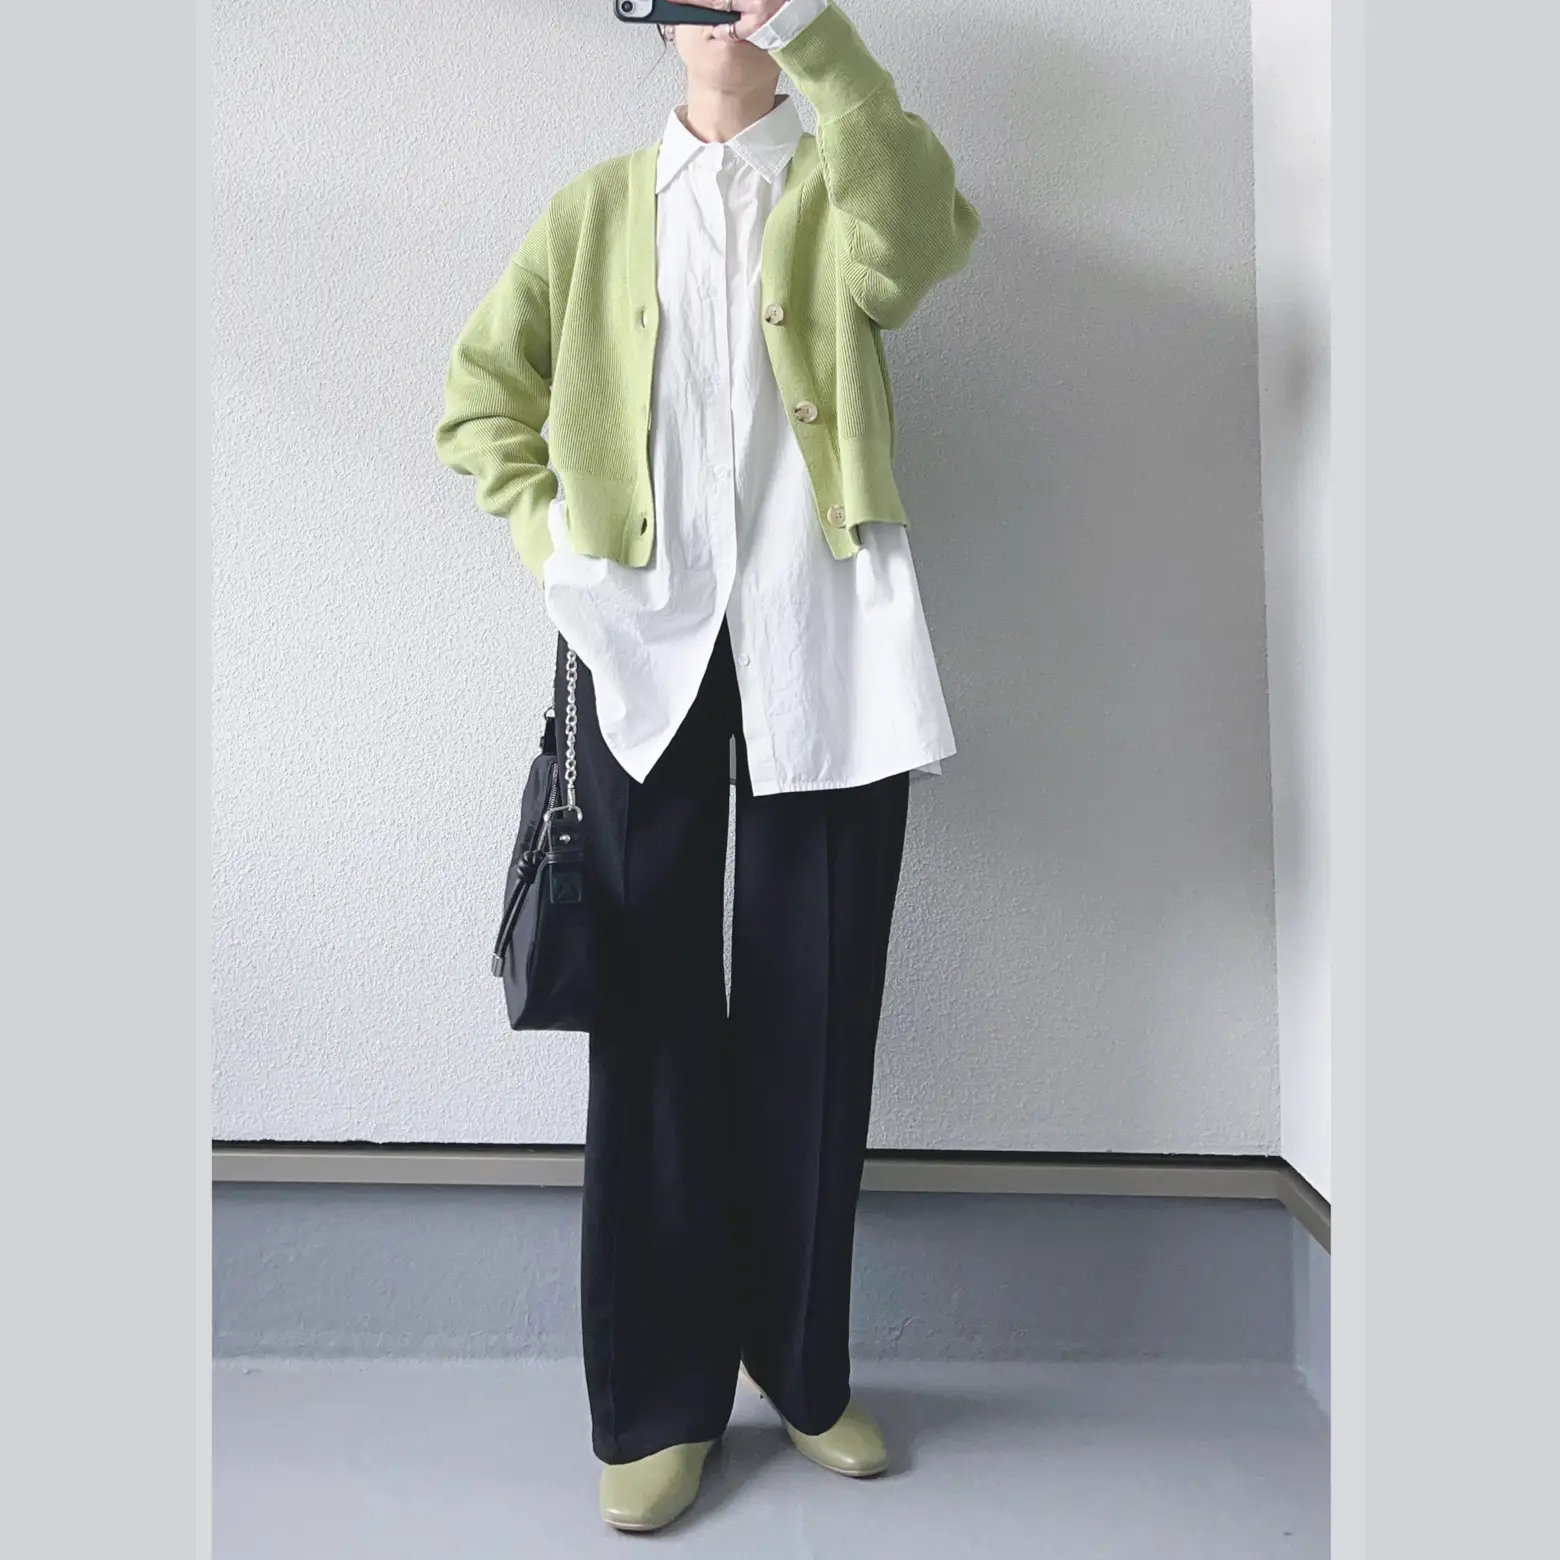 GU 美シルエットパンツの着回しコーデ☆ | haruが投稿したフォトブック